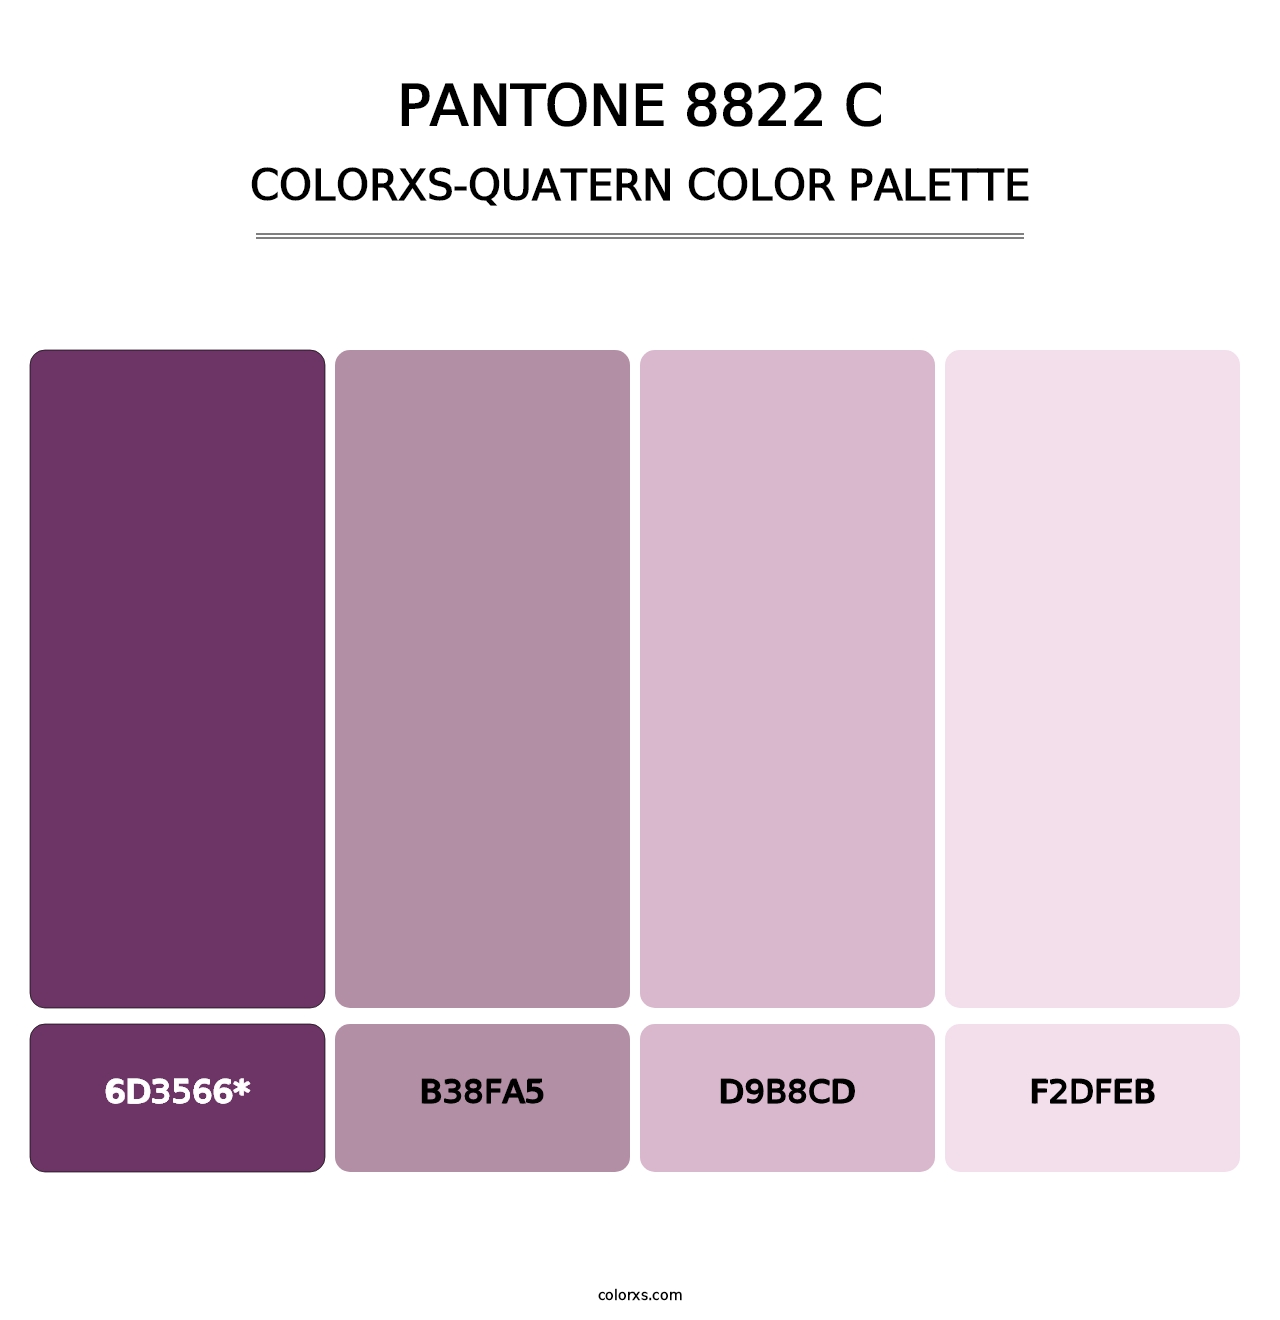 PANTONE 8822 C - Colorxs Quatern Palette